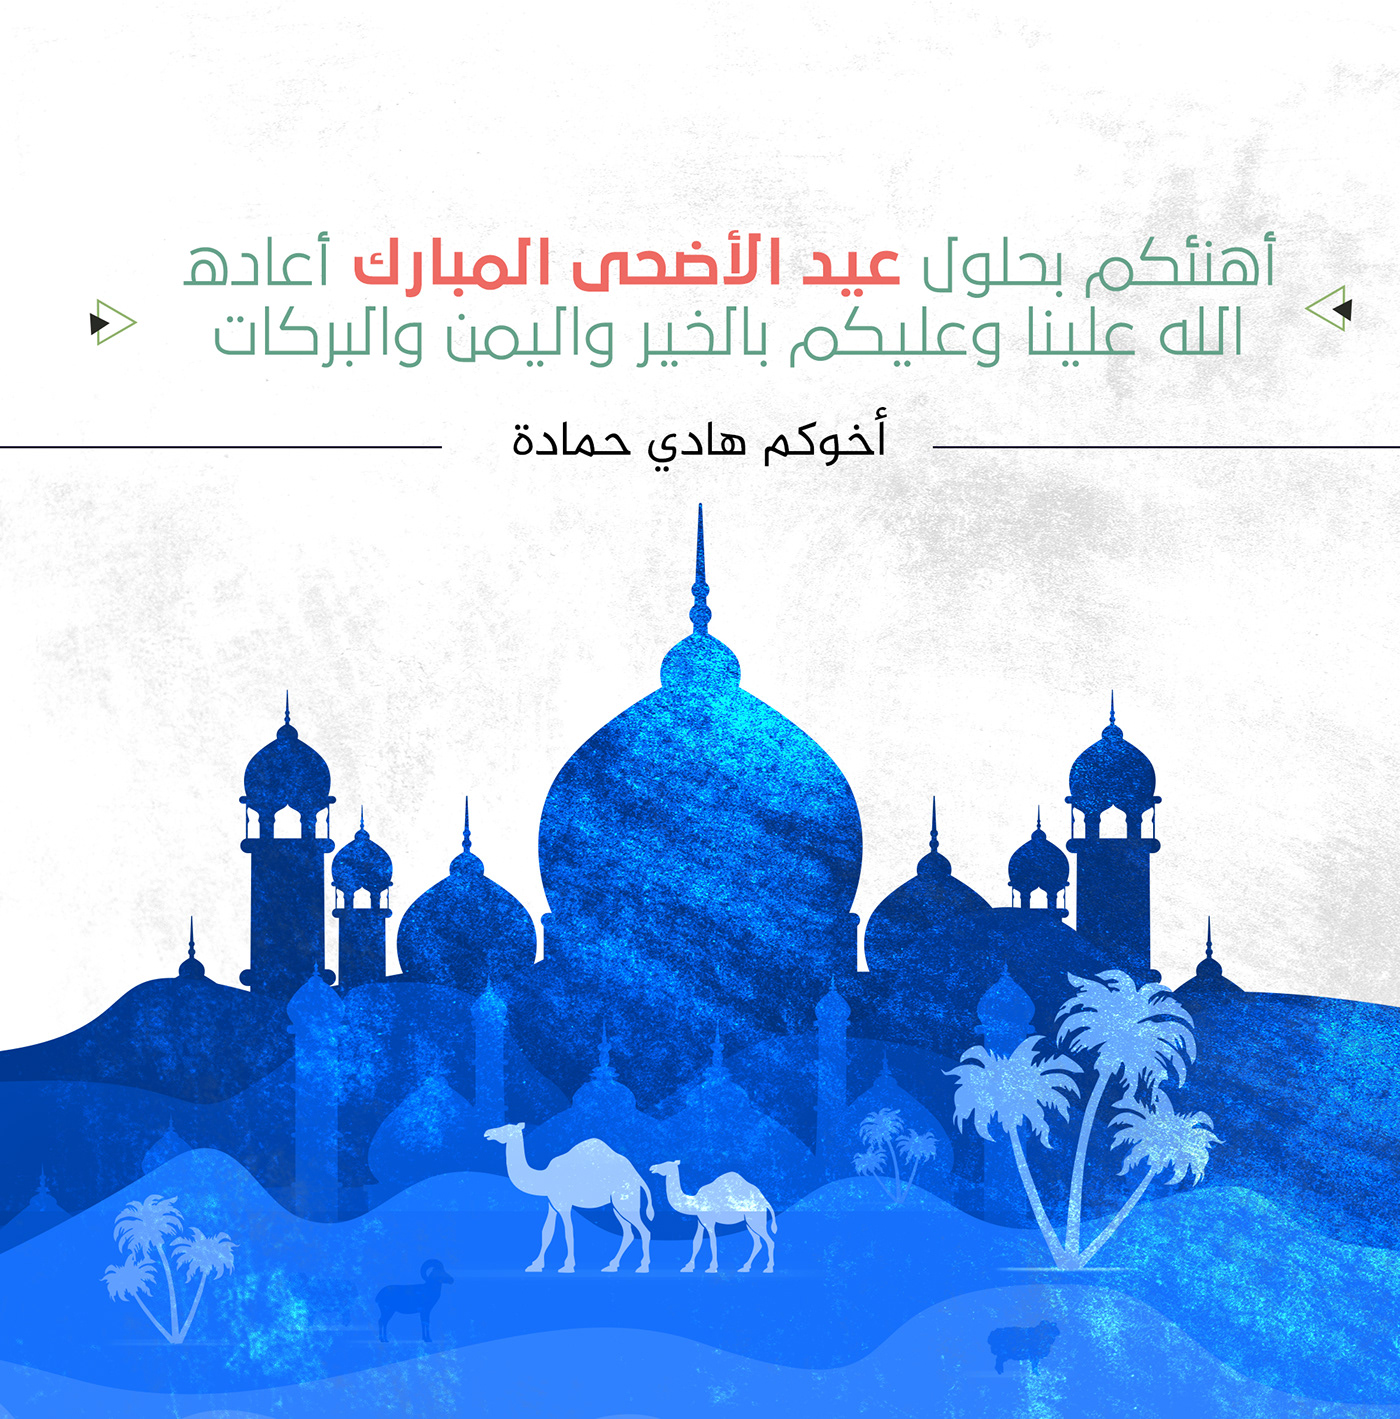 digital illustration الخط الحر الخط العربي طباعة العيد فن الخط كاليجرافي HADY JO